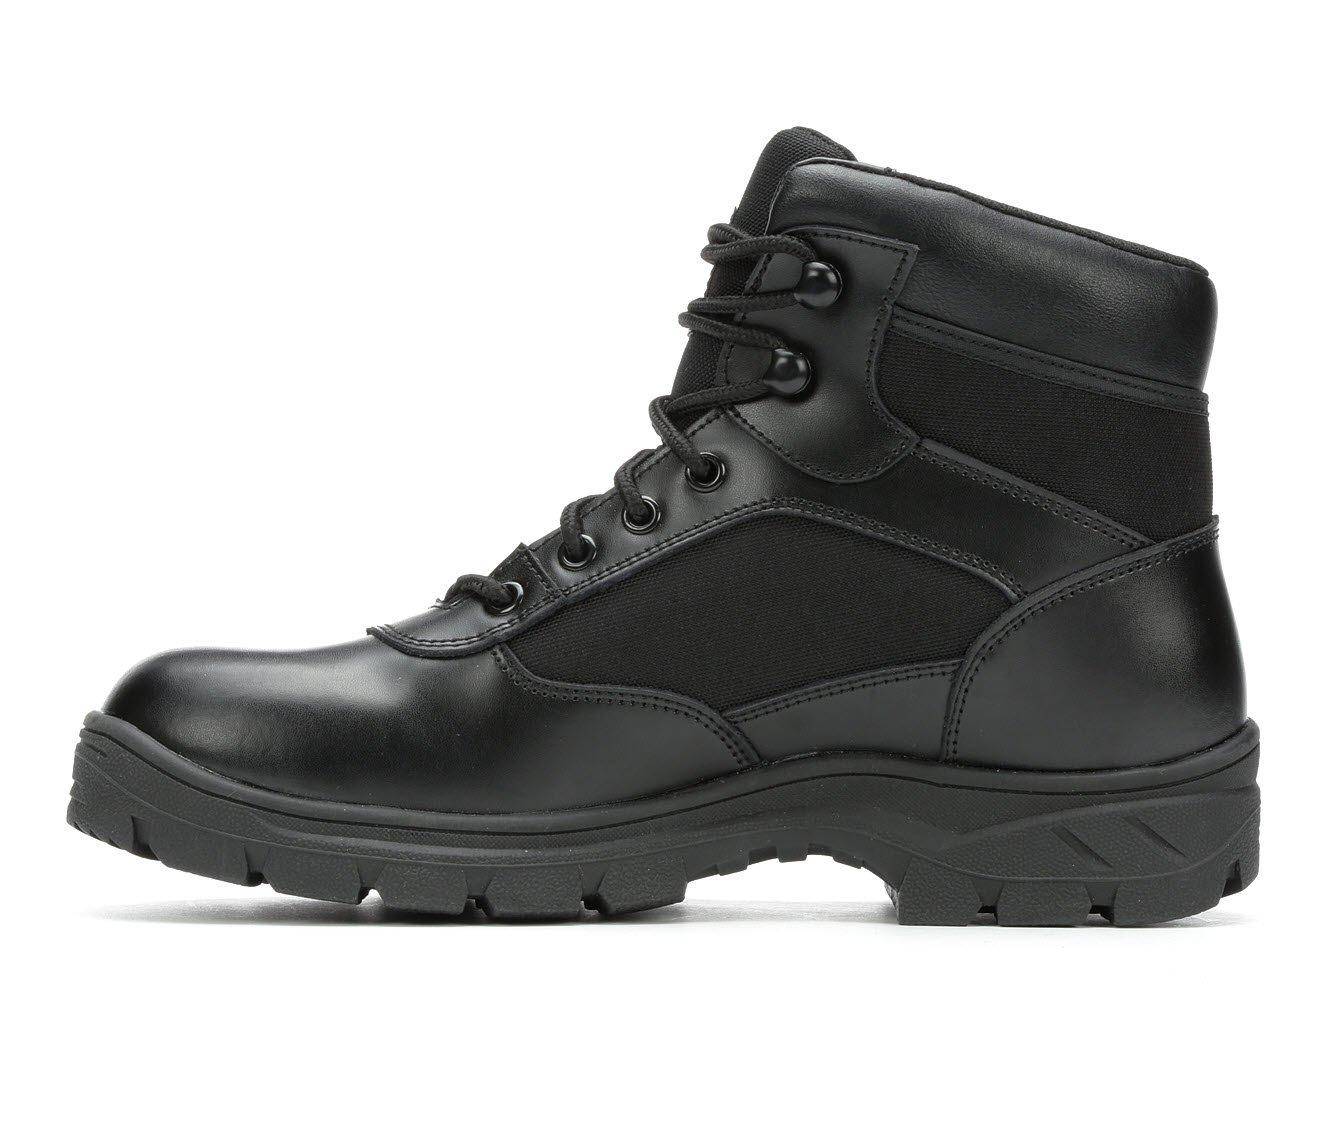 Men's Skechers Work Benen Electrical Hazard Waterproof 77526 Work Boots ...